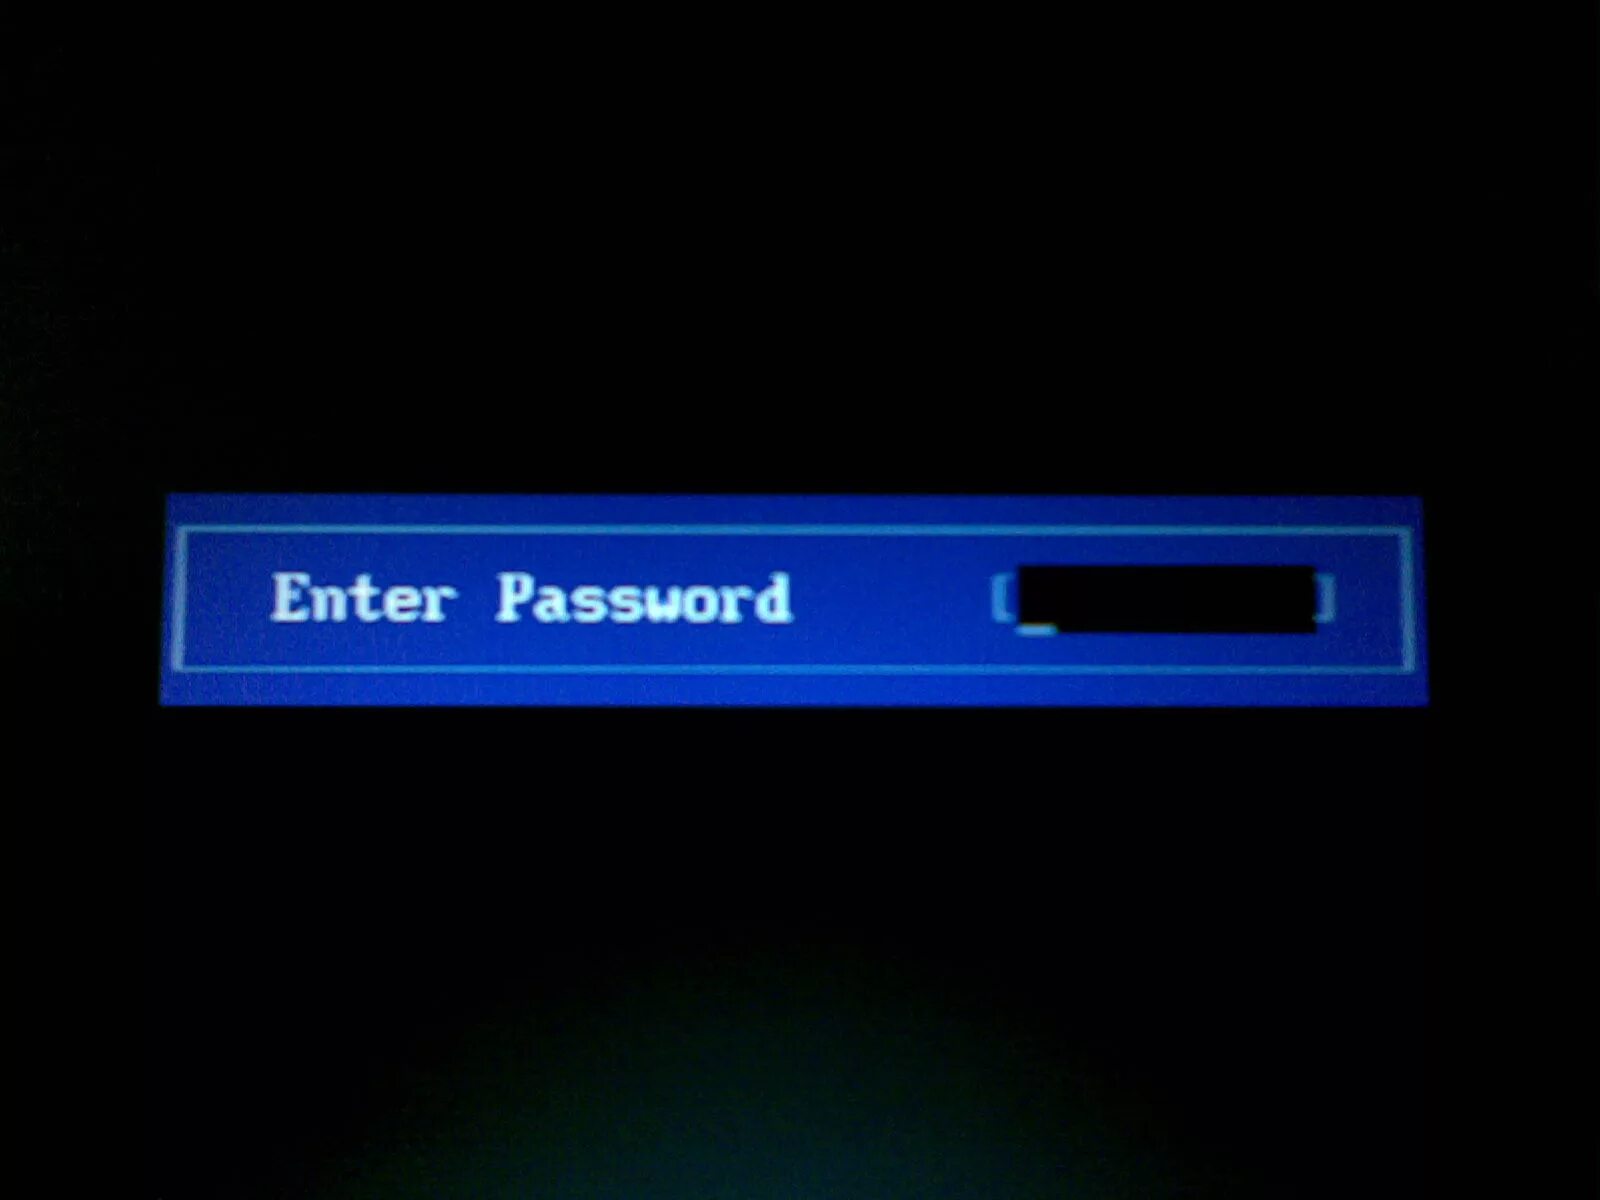 Пароль на BIOS. Пароль при входе в биос. Биос enter password. Пароль на биос фото.